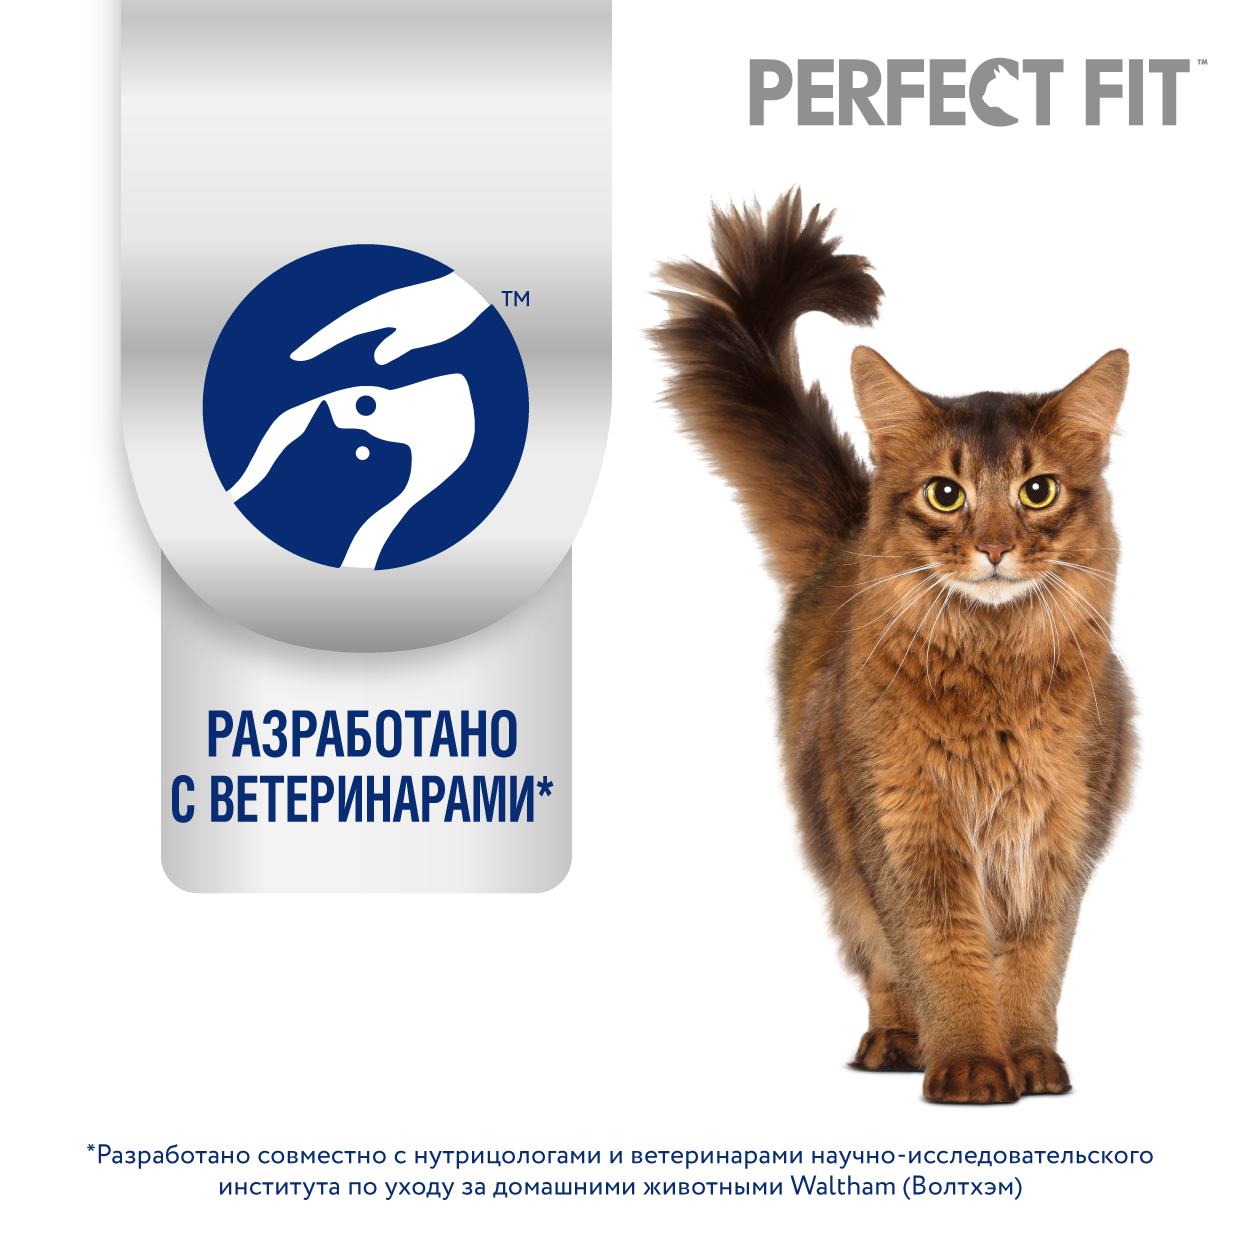 Сухой корм  для взрослых кошек PERFECT FIT «Здоровье почек» с лососем, 2.5кг